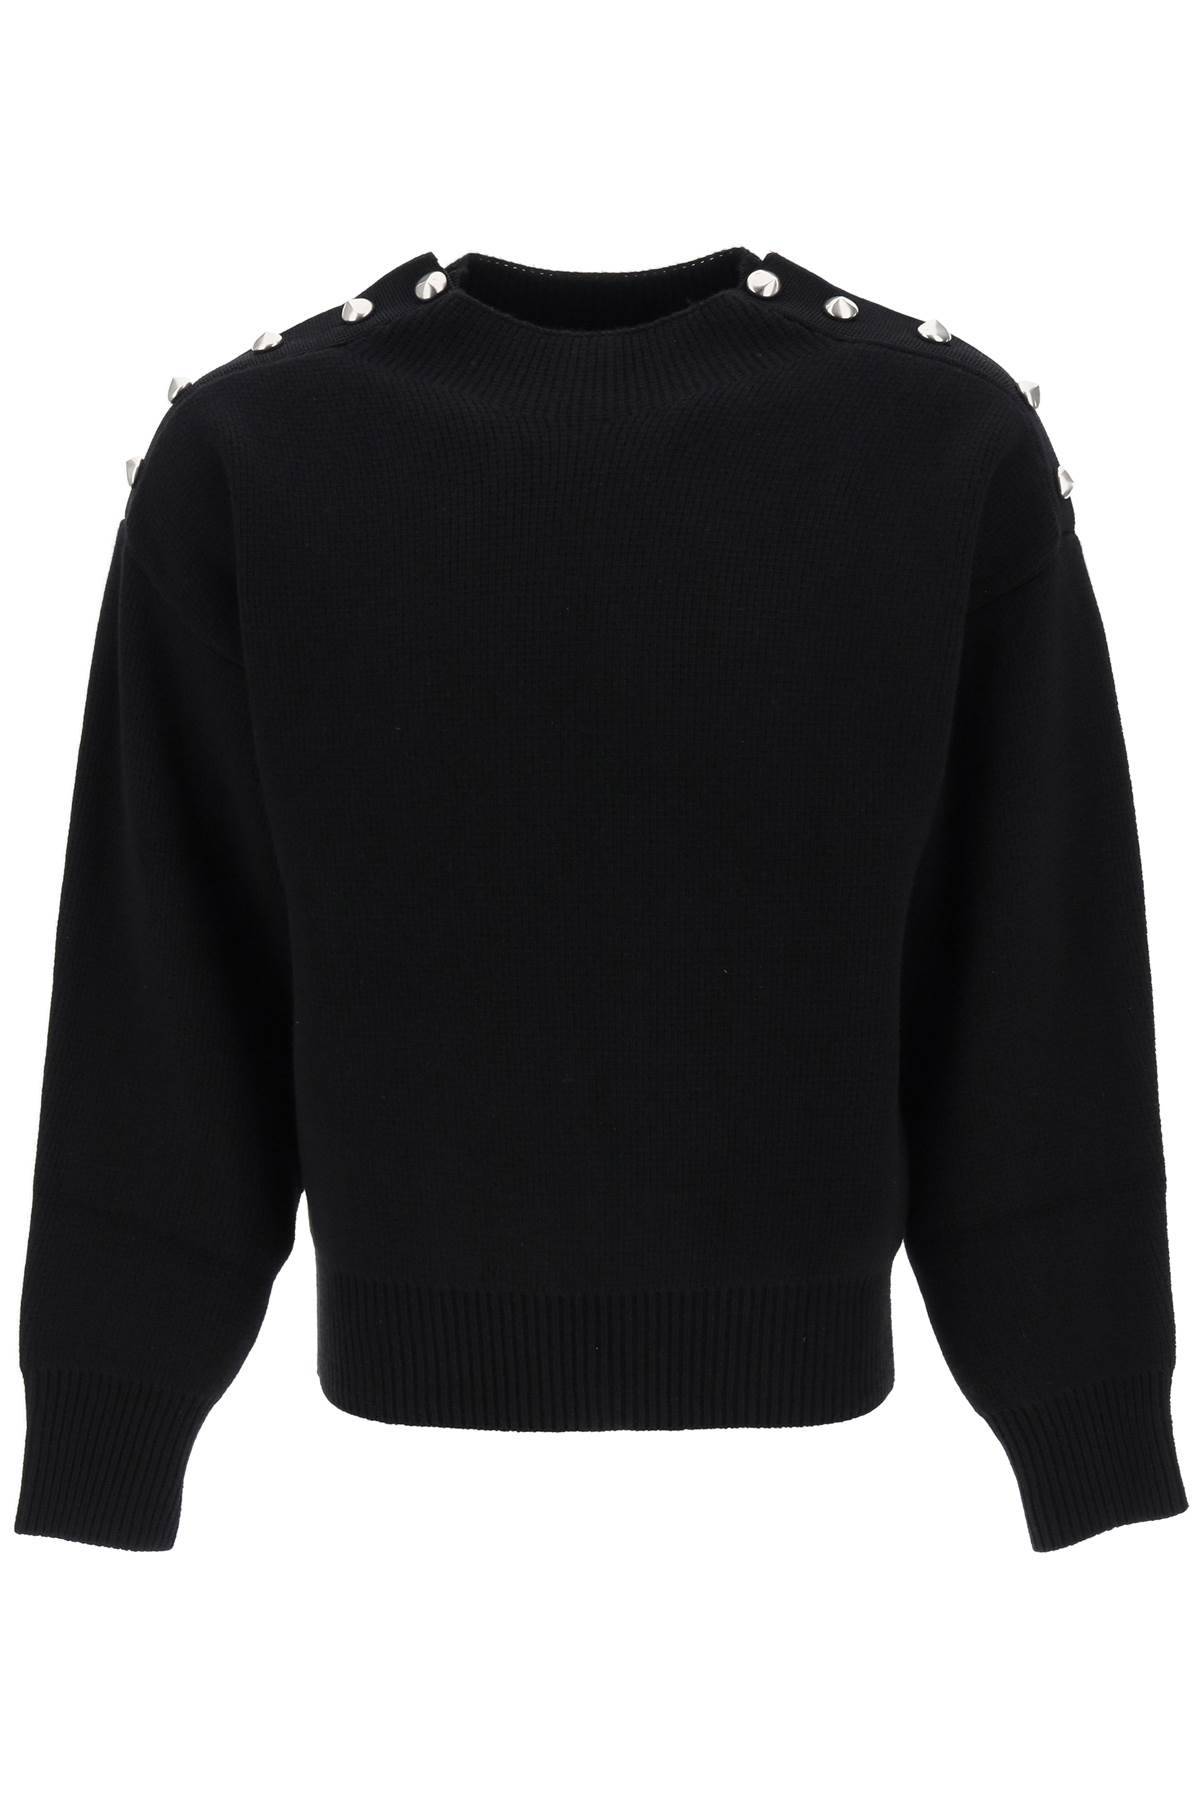 Ferragamo Metal Button Sweater In Black